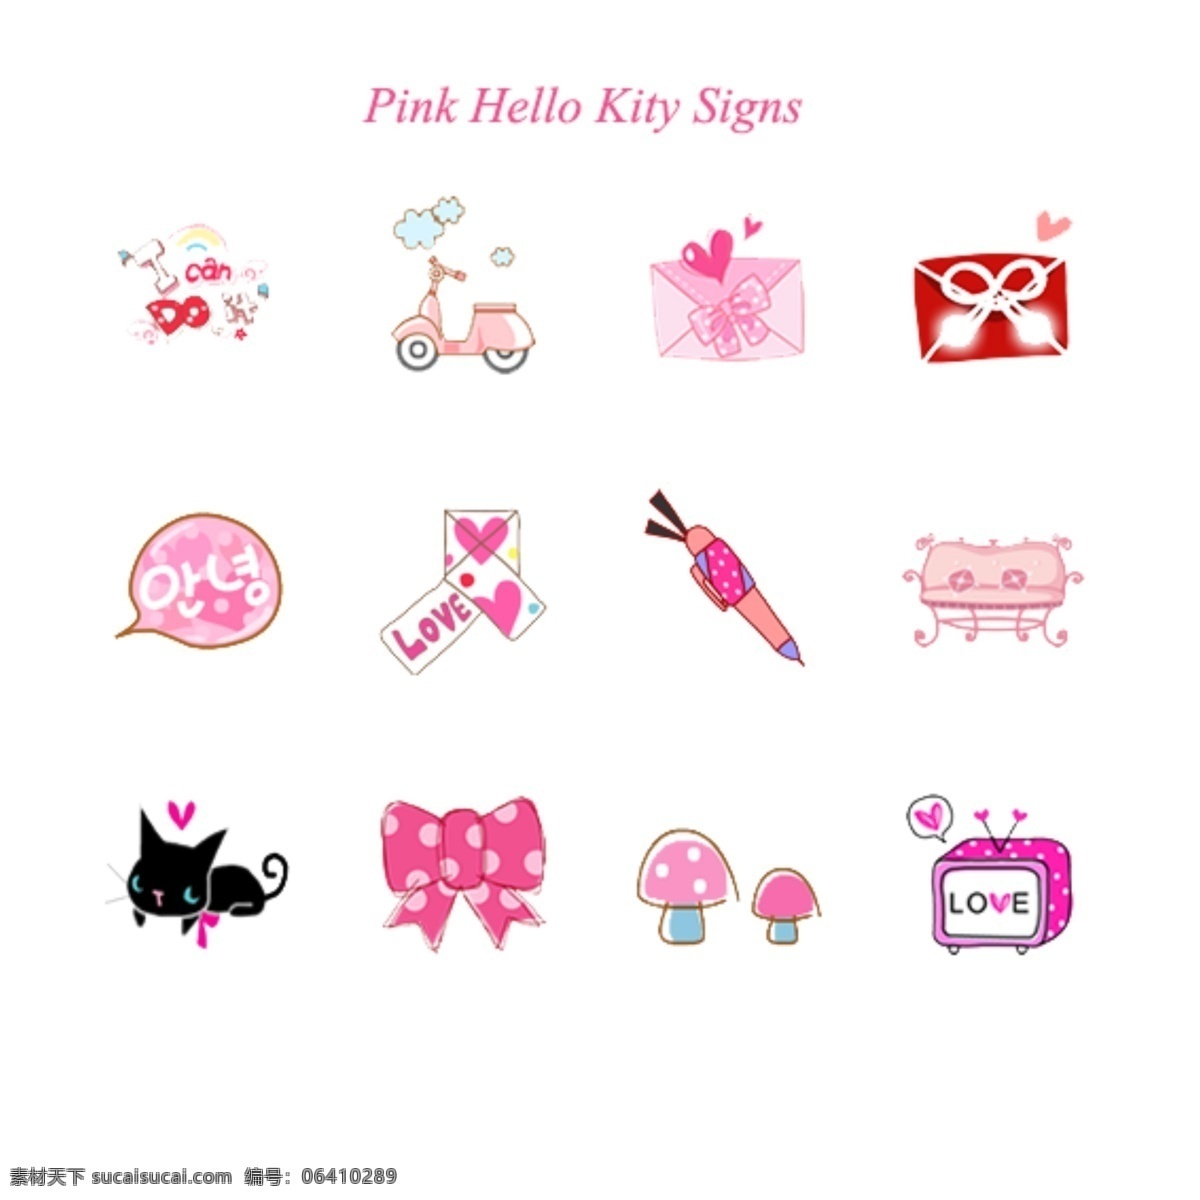 粉色 hello kitty 图标 粉色图标 标示 指示 标 web 界面设计 图标按钮